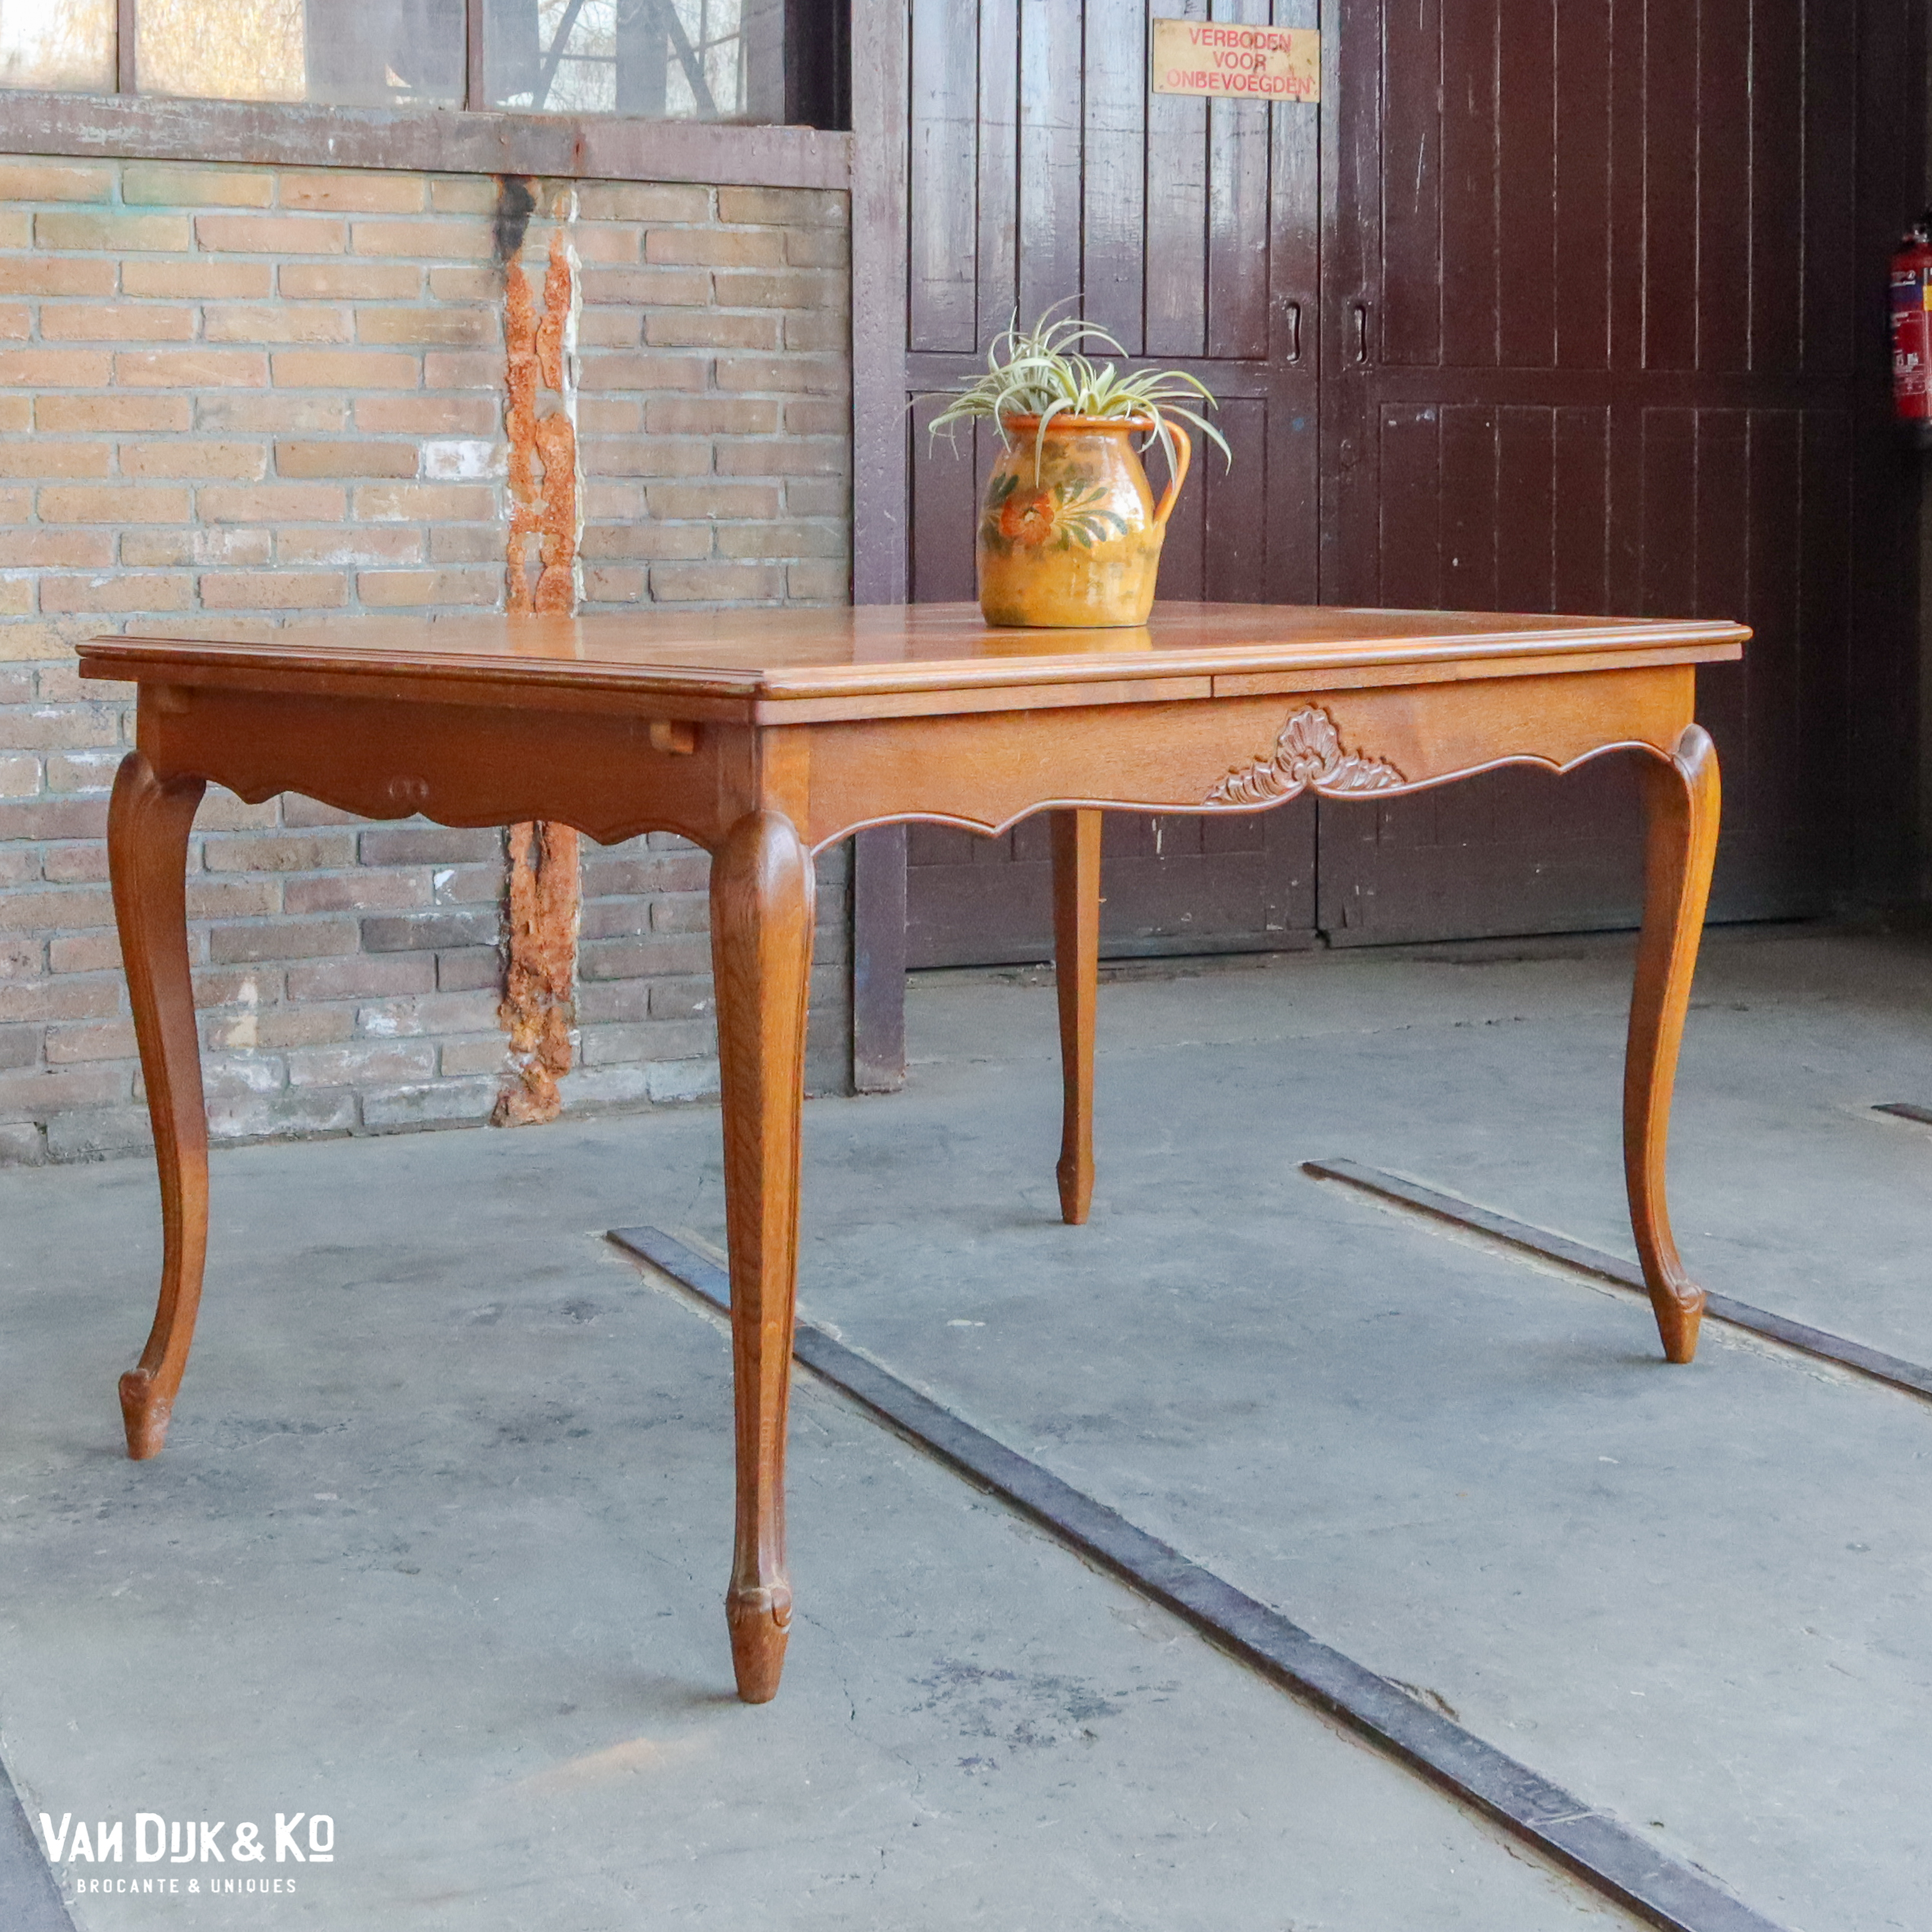 Vintage uitschuifbare tafel